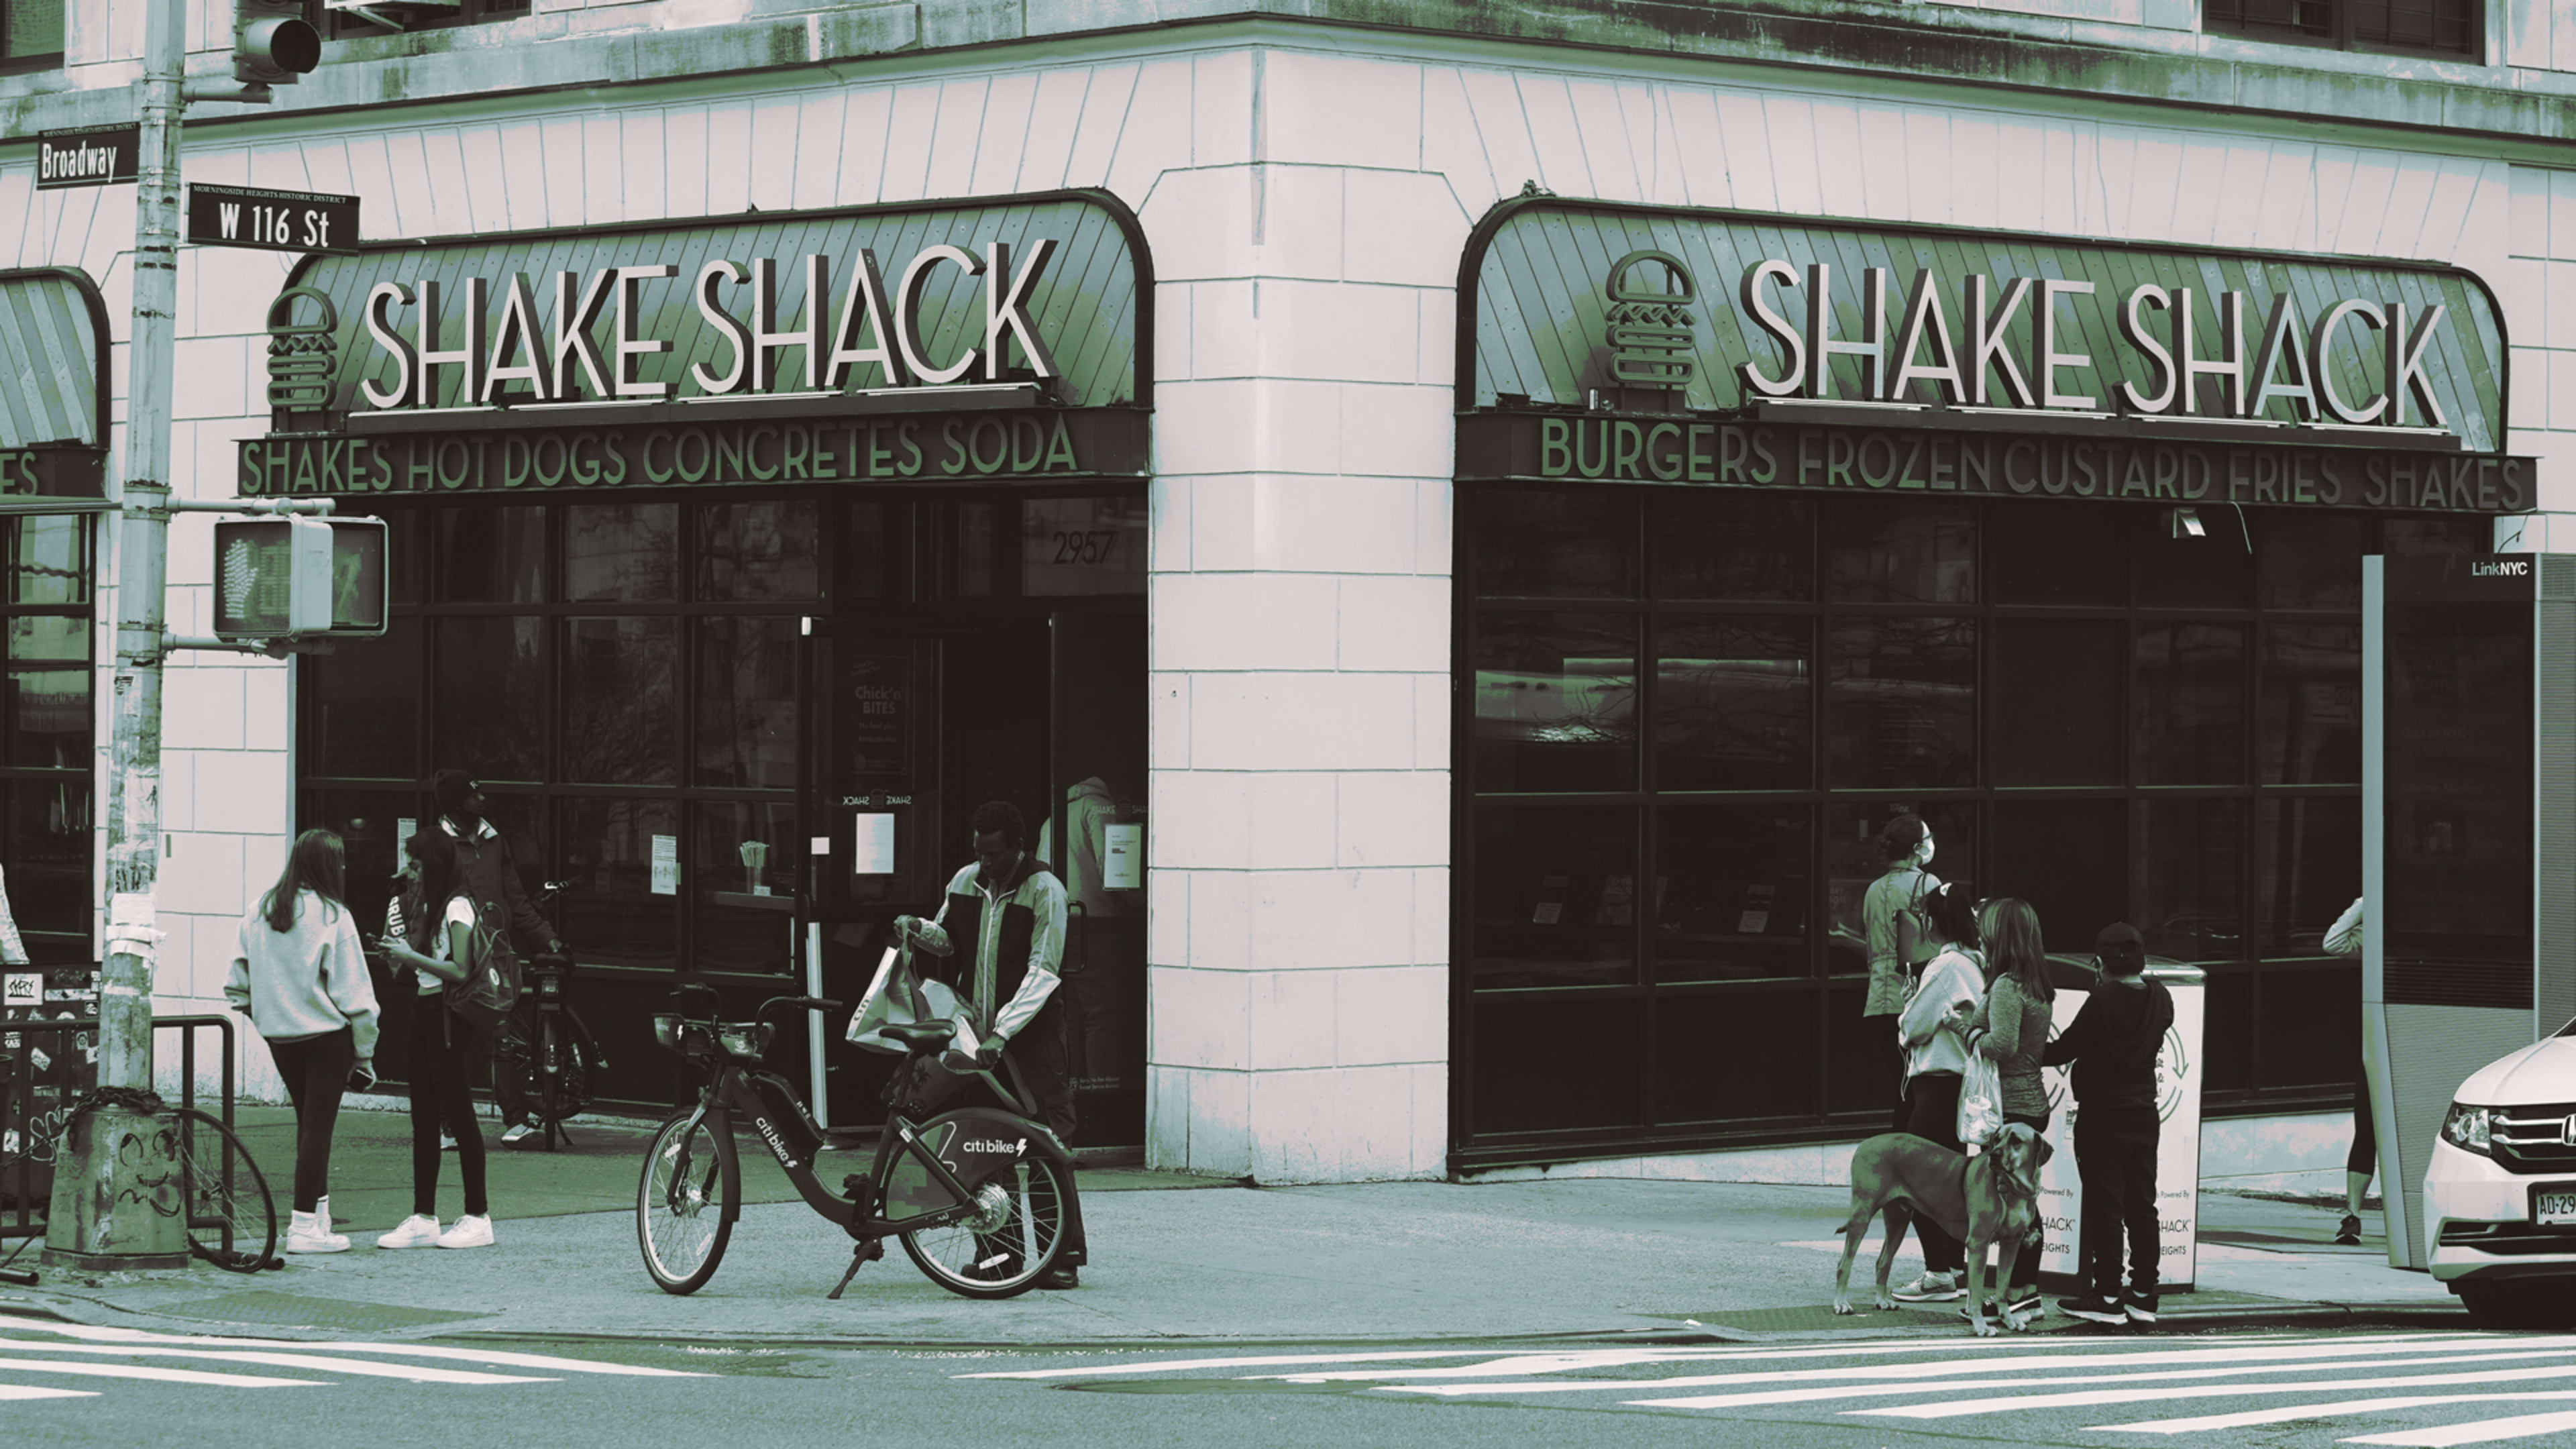 Shake Shack returns $10 million PPP loan meant for coronavirus-hit small businesses